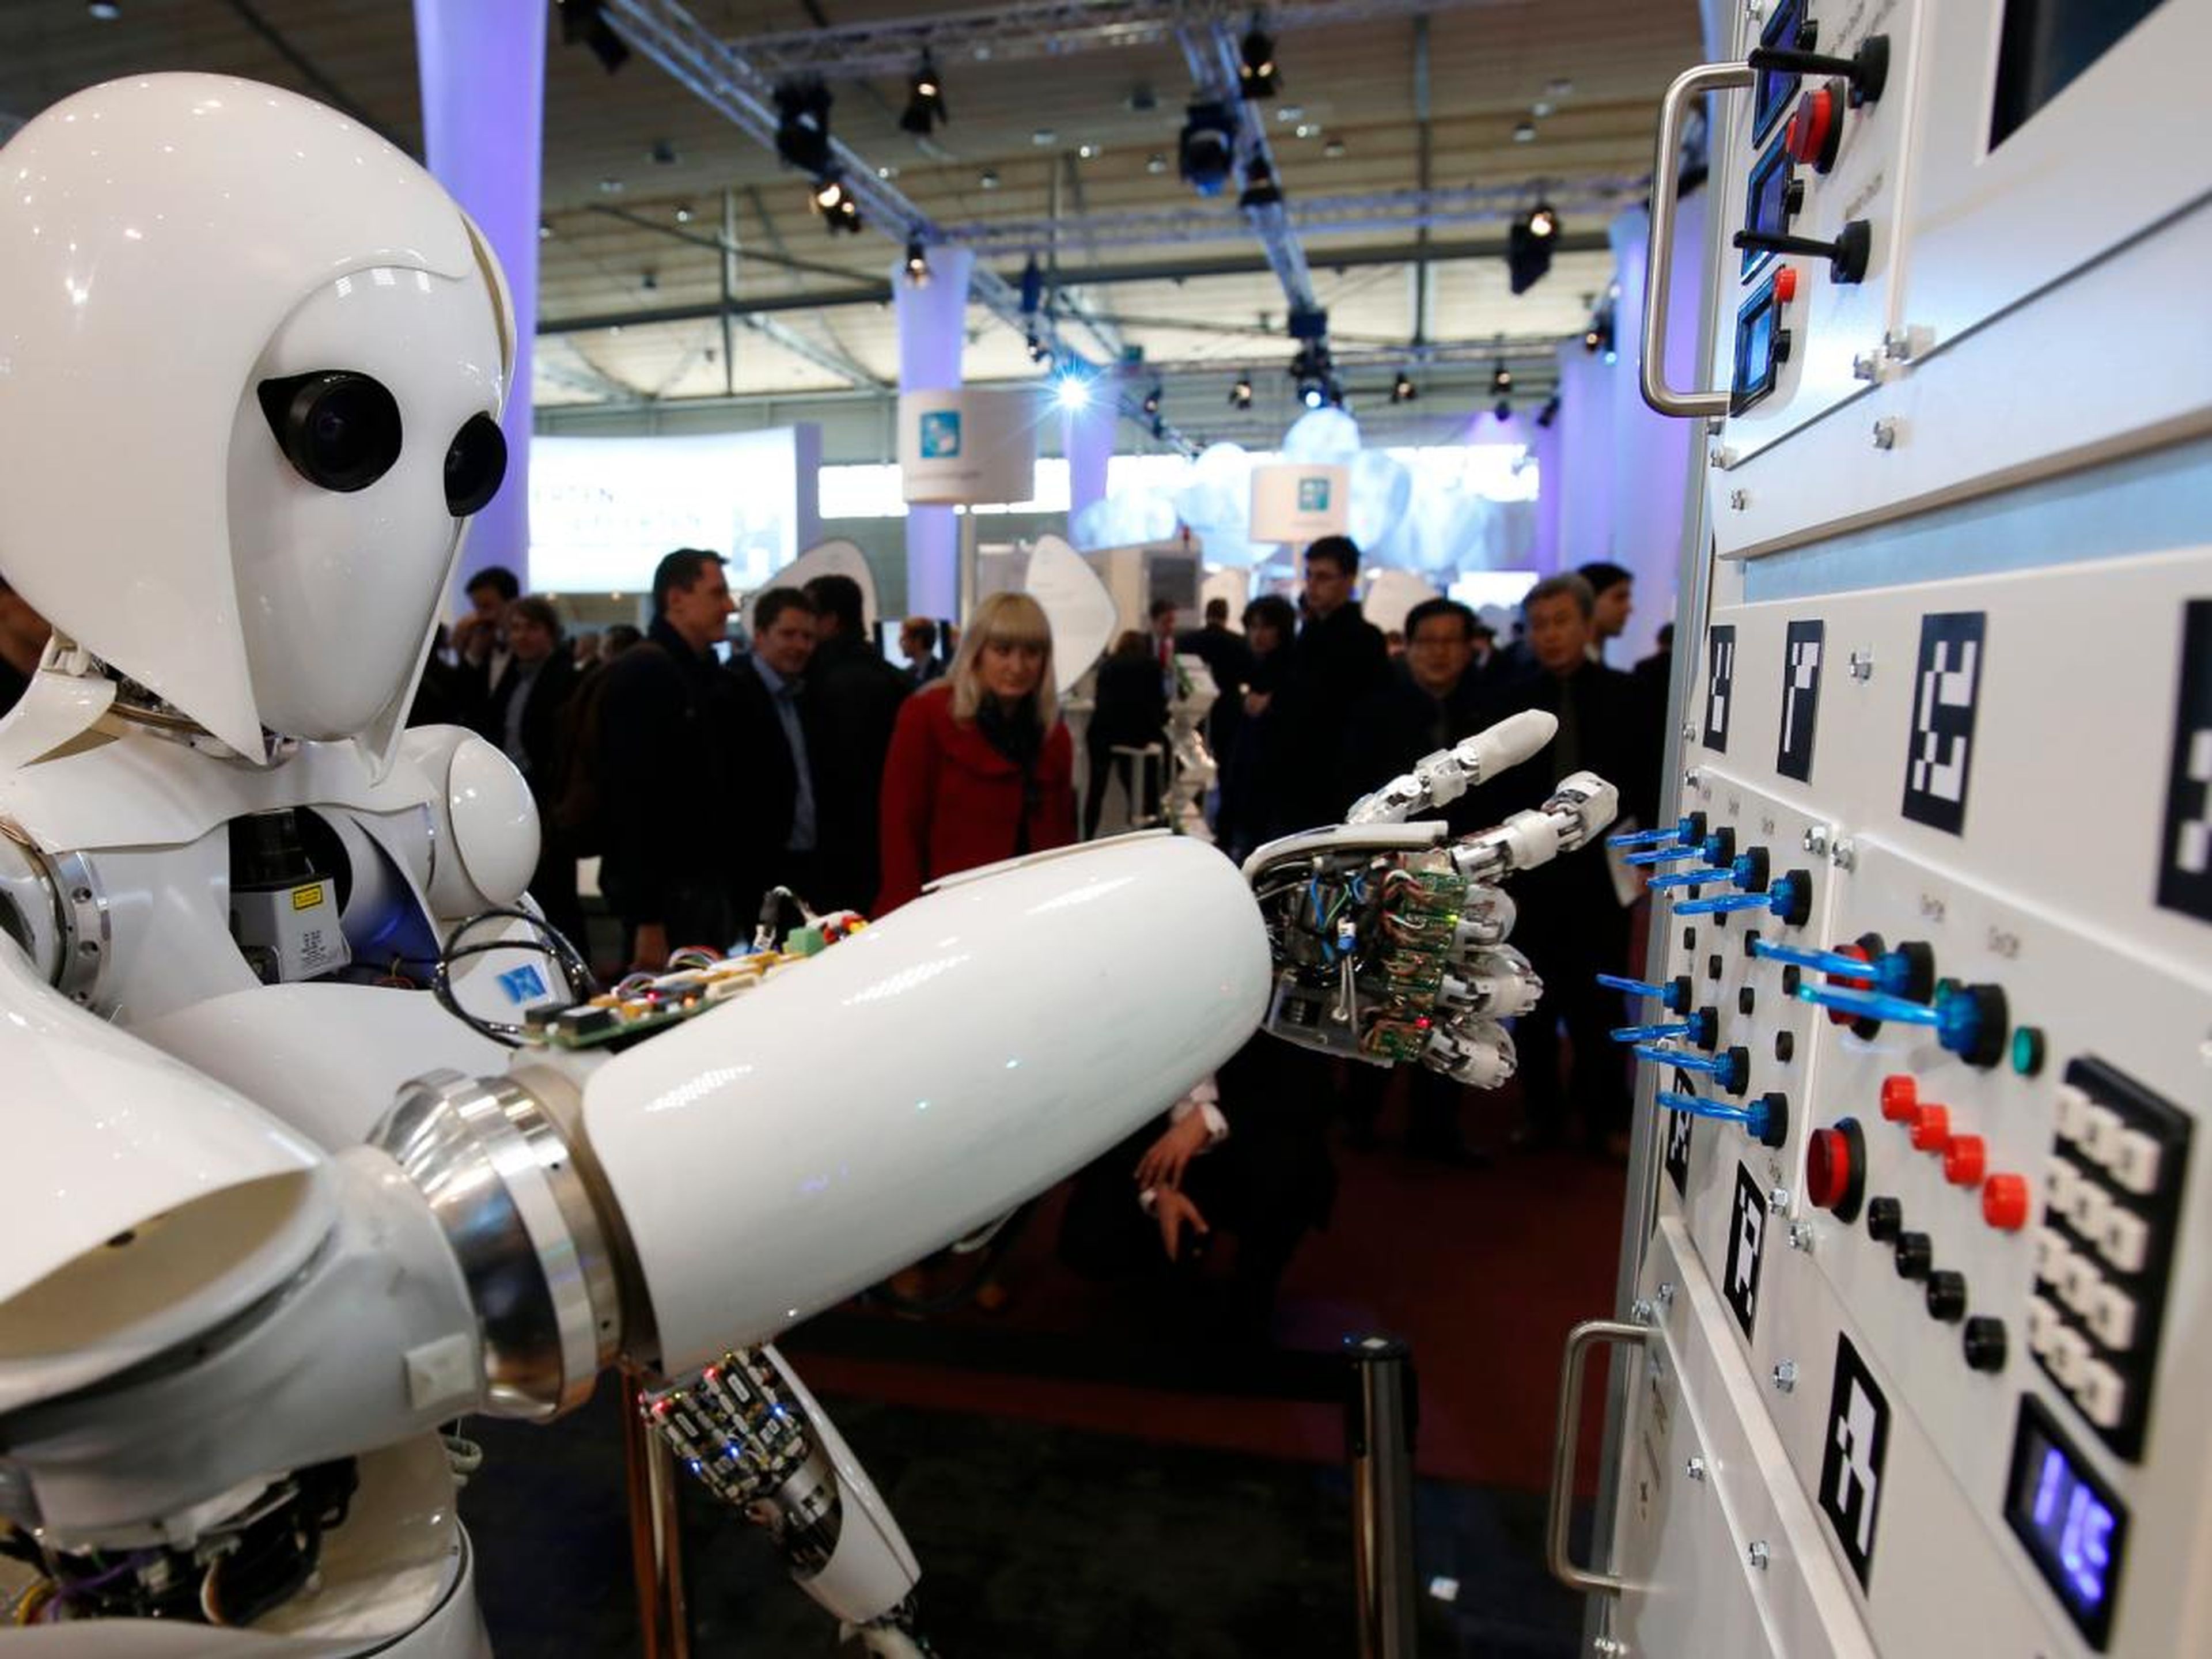 El robot humanoide AILA (inteligencia artificial ligero android) opera una centralita en una feria de ordenadores en Hanover el 5 de marzo de 2013.